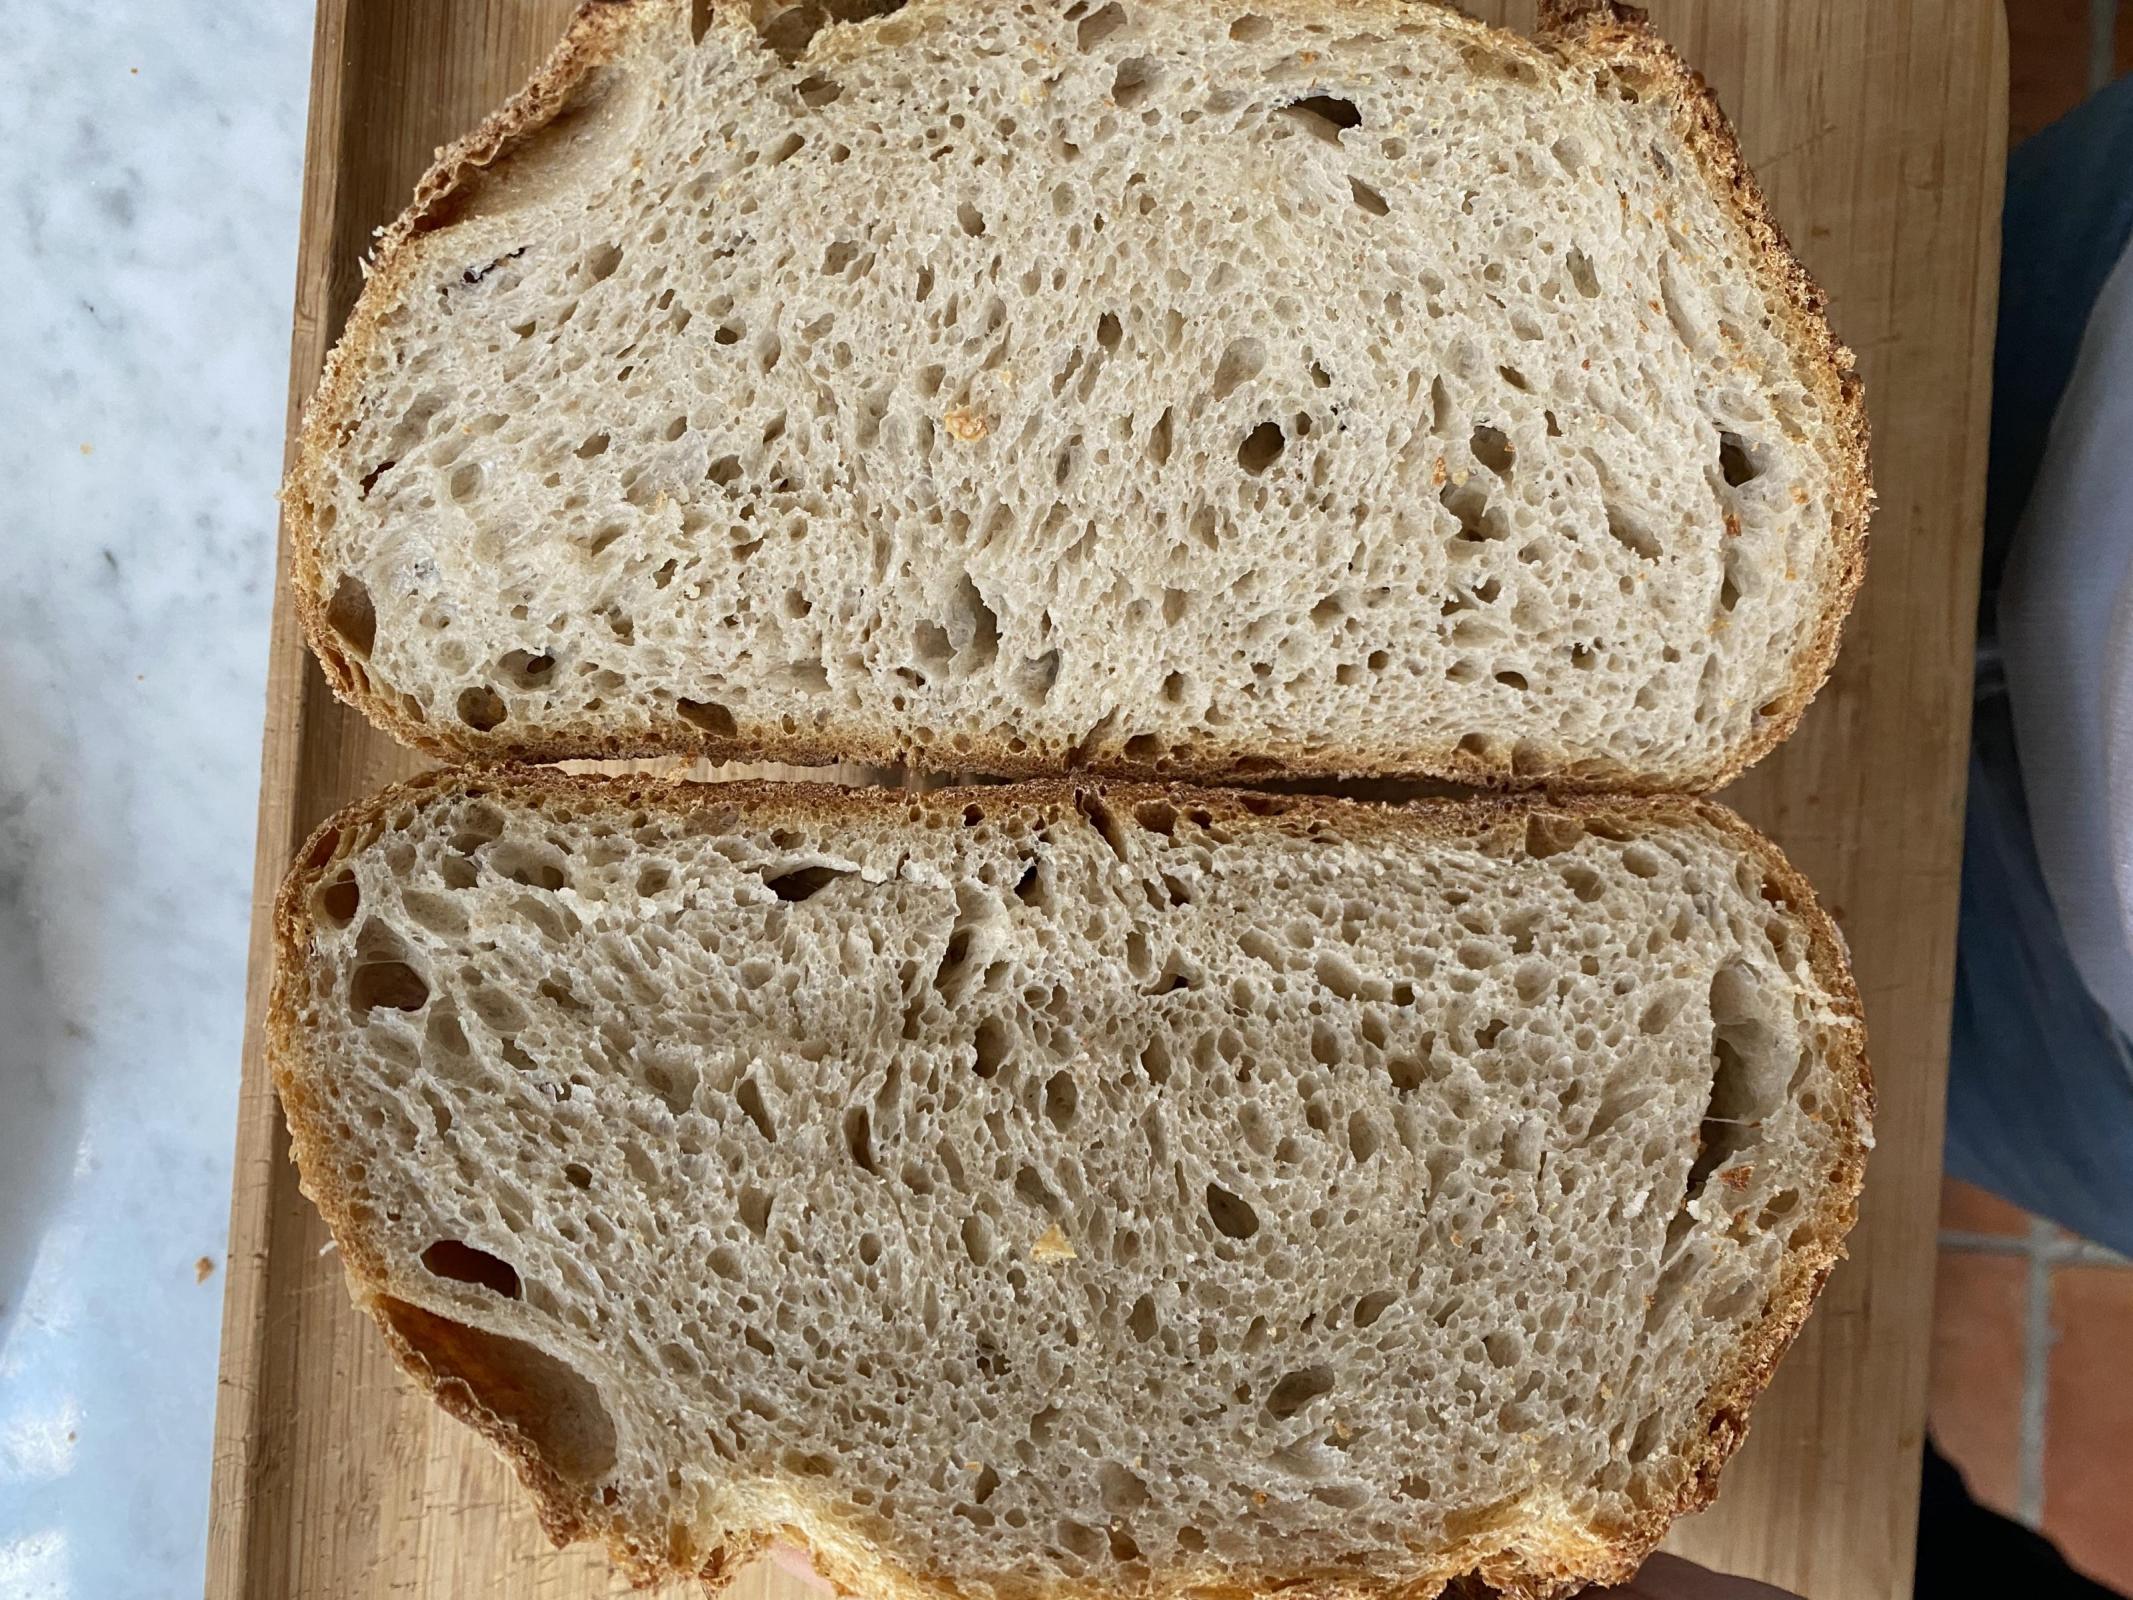 Cold bulked loaf